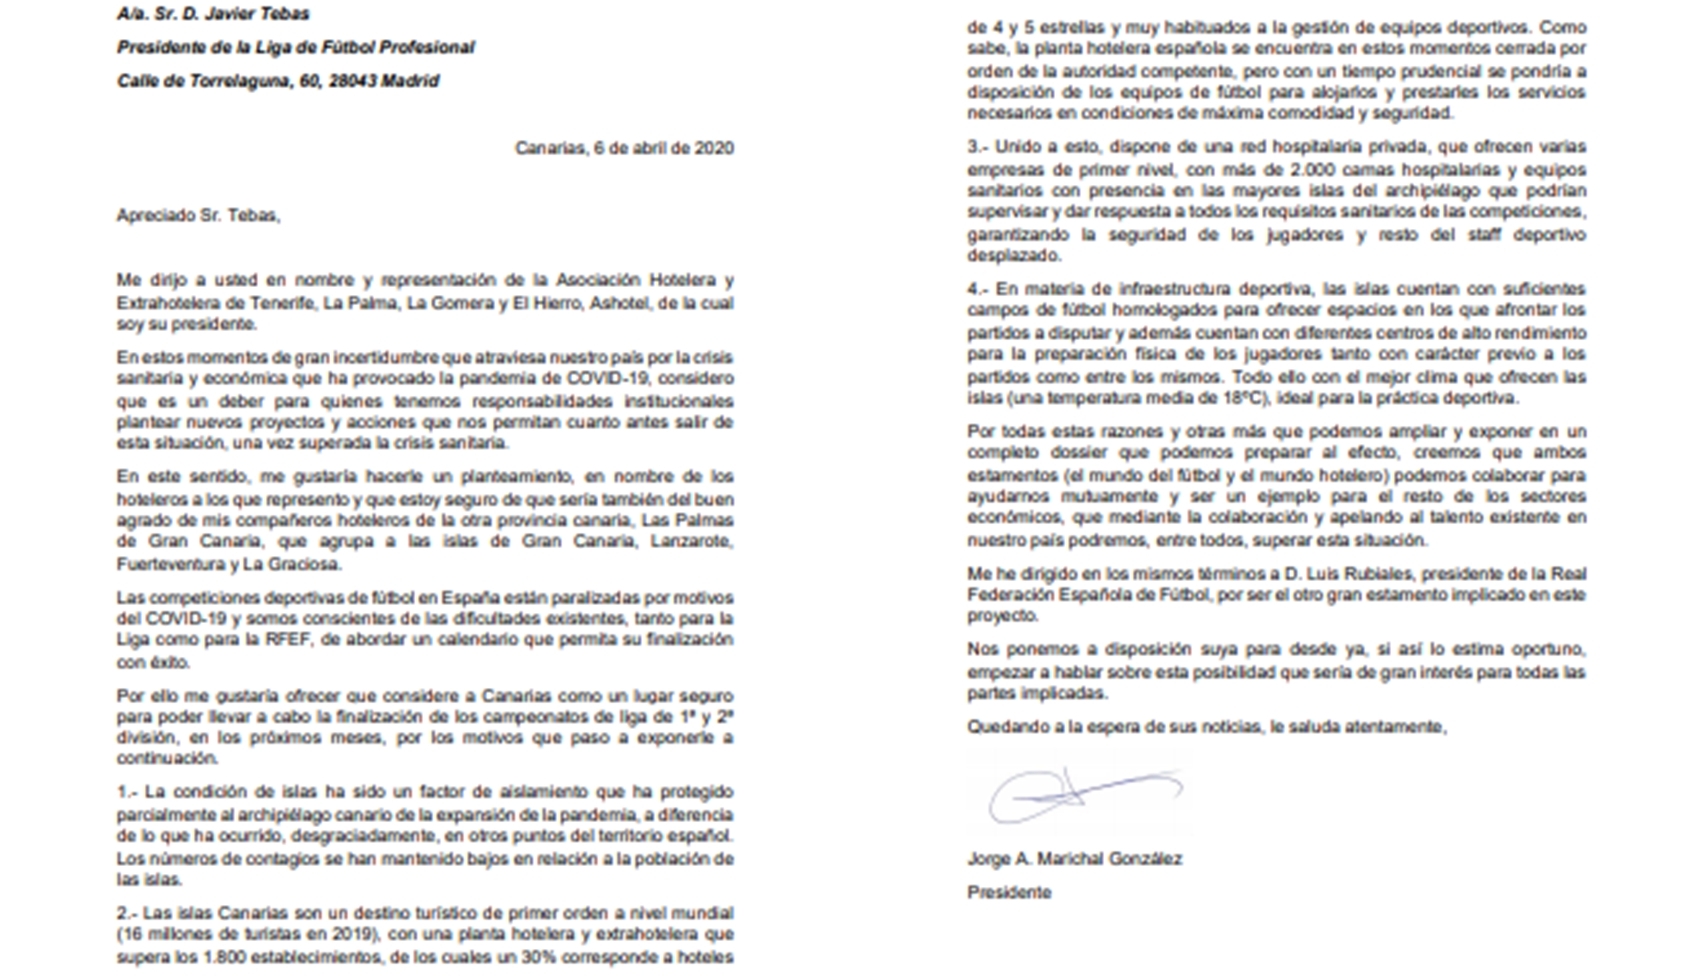 La carta que le ha enviado el presidente de ASHOTEL, Jorge Marichal, a Javier Tebas, presidente de La Liga